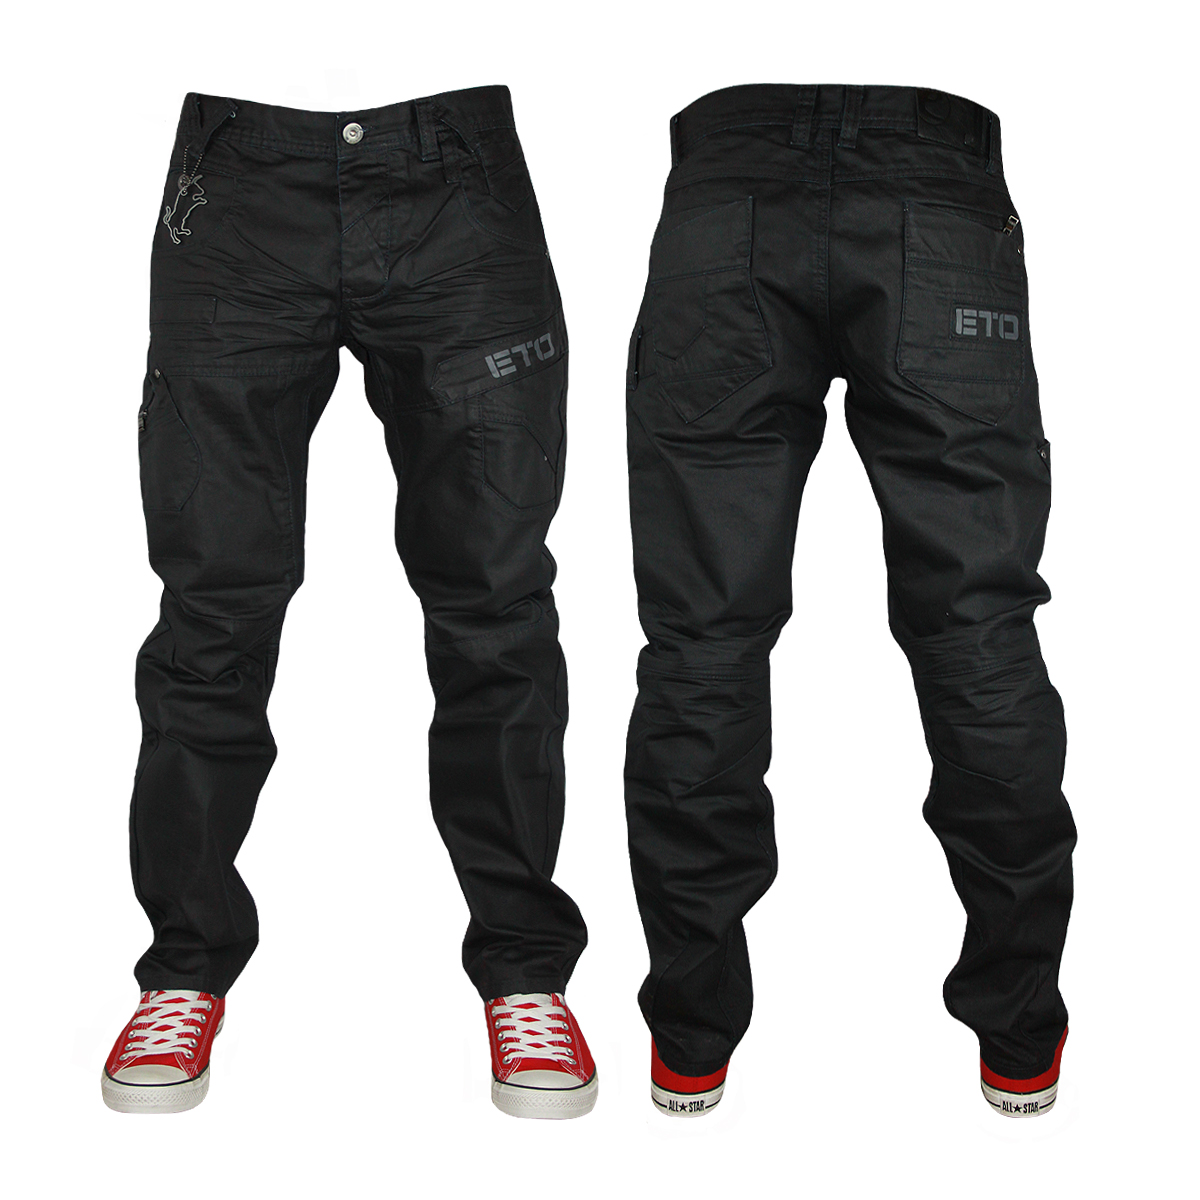 eto jeans image is loading new-mens-black-eto-jeans-em367-designer-straight- EFYEPPY